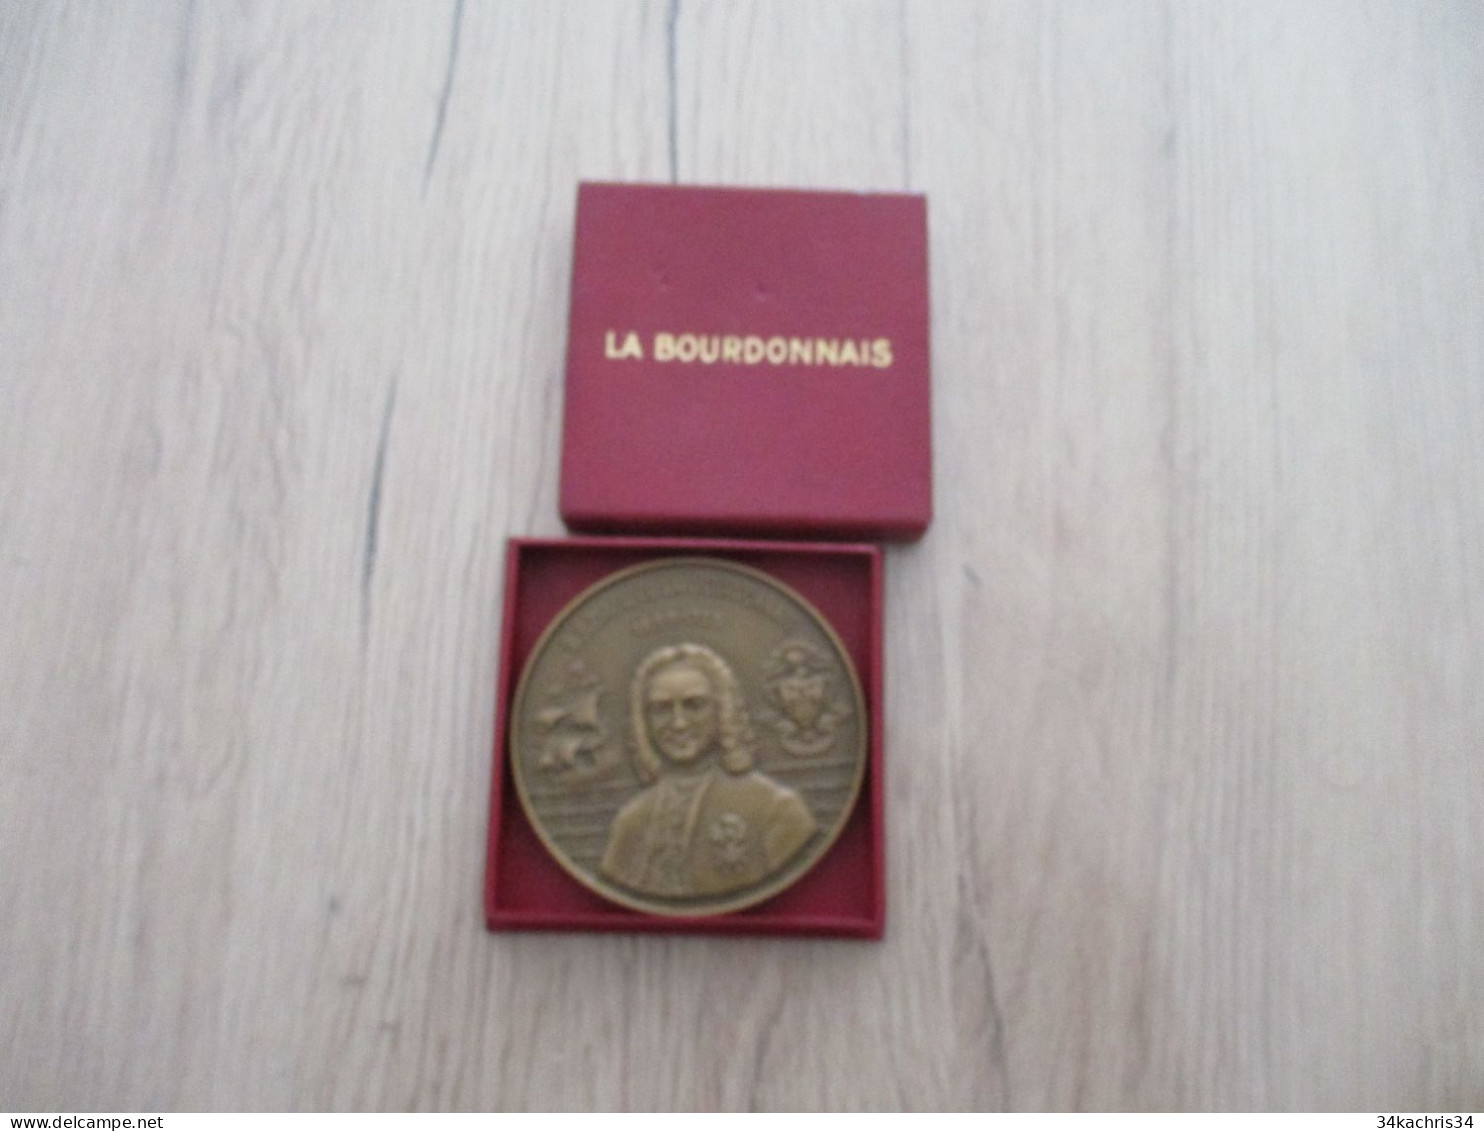 Médaille De Table La Bourdonnais Compagnies Messageries Maritimes 1953 5.5 Diam 100g Environs Dans Sa Boite - Maritime Dekoration